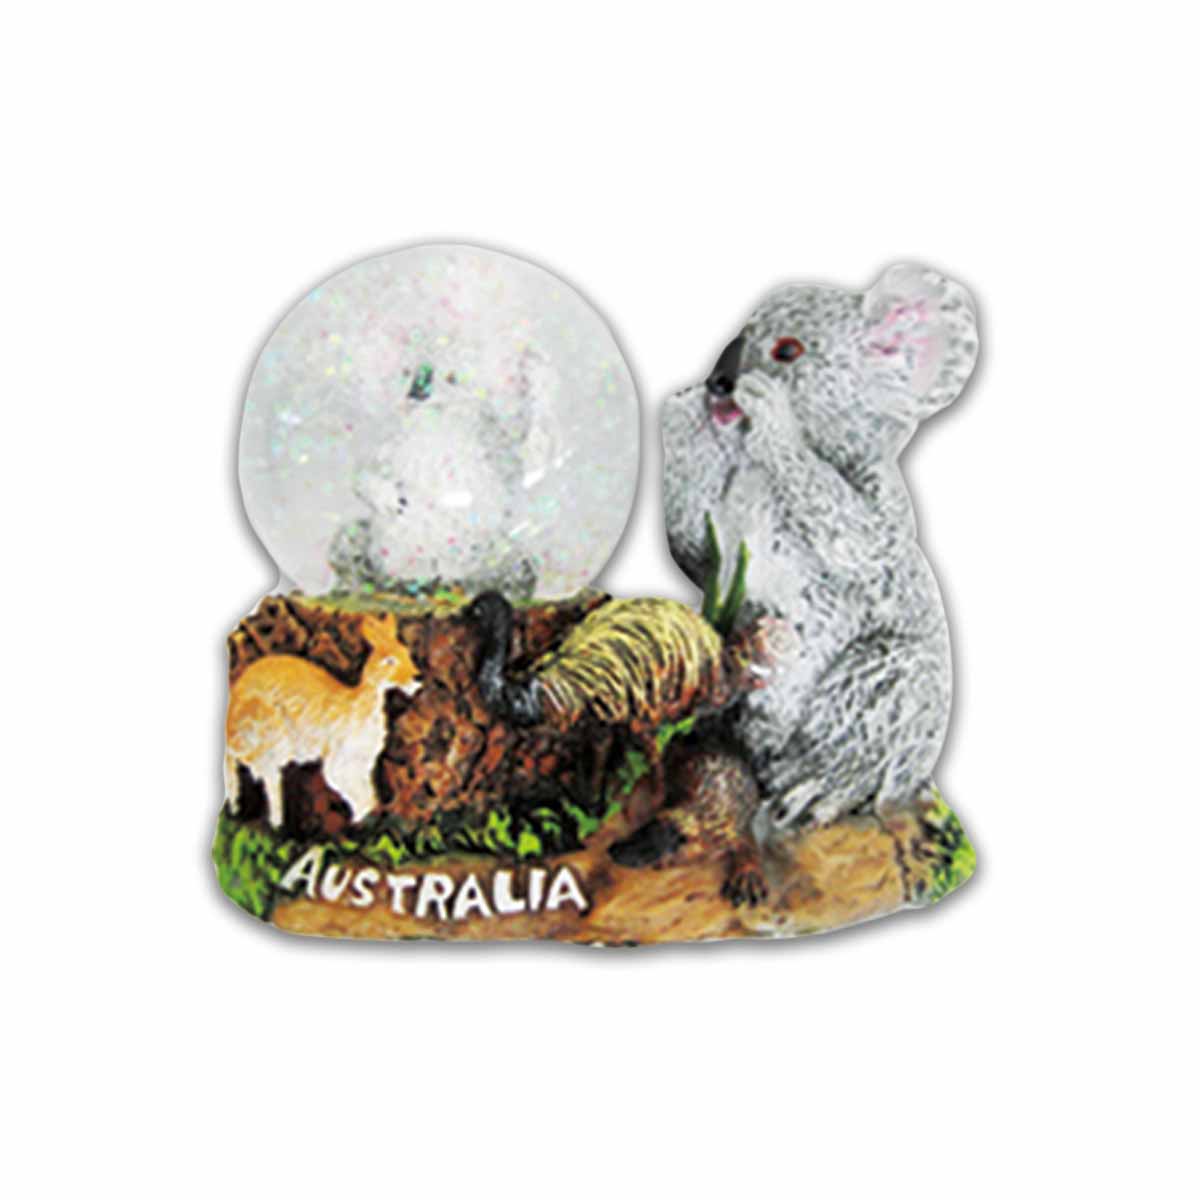 Snow Globe with Koala Figurine